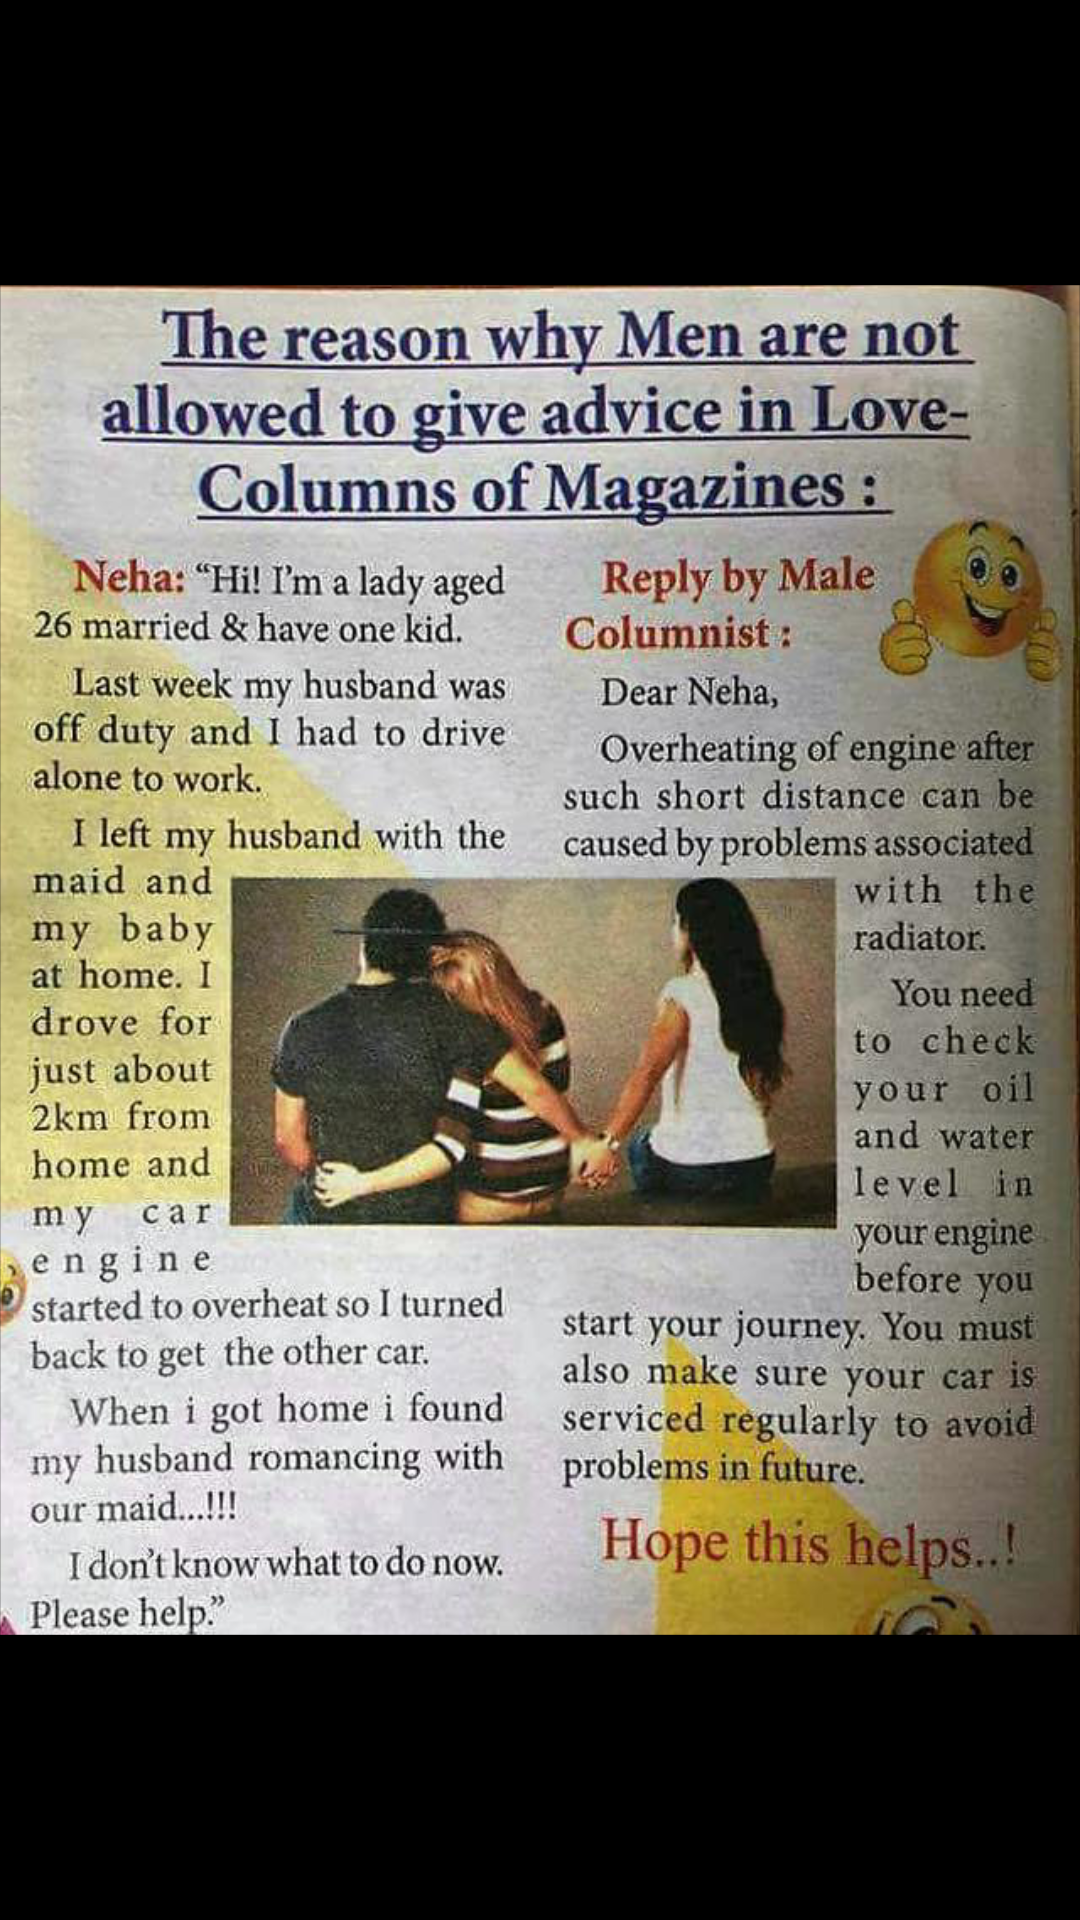 This magazine columnist...